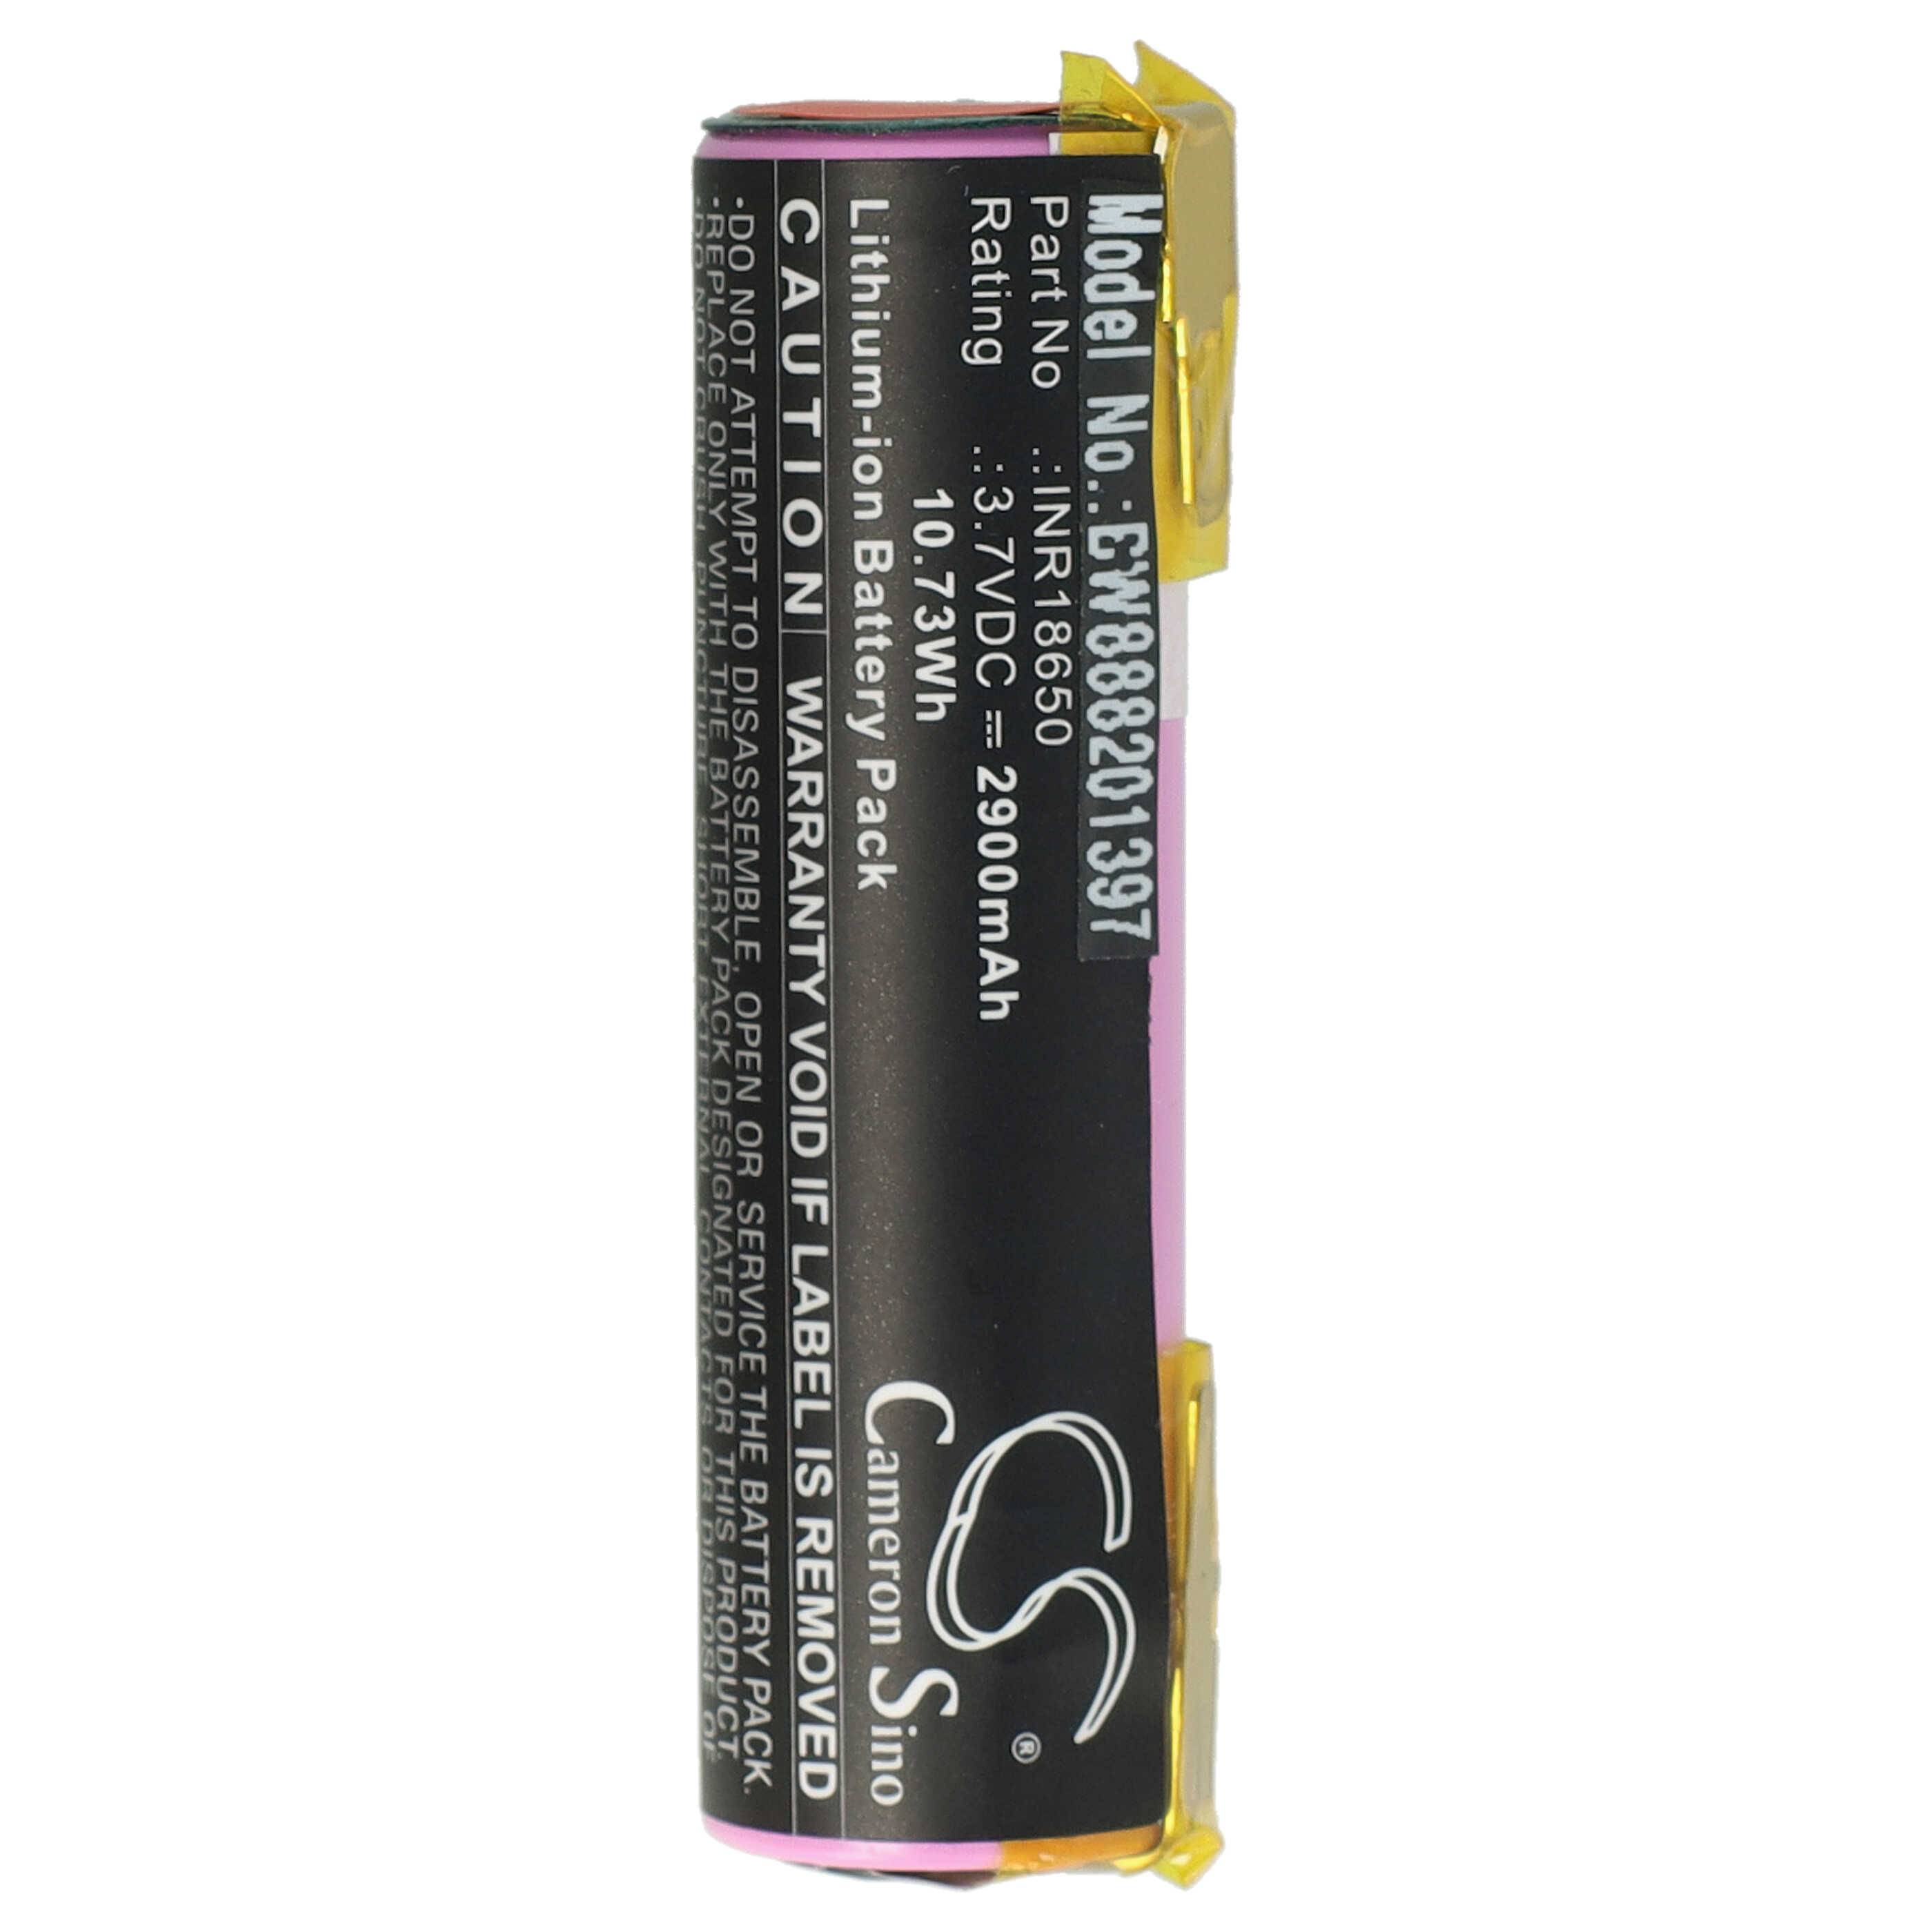 Batería reemplaza Atika 08829-00.640.00, 08800-000.640.00, 302380 para herramienta - 2900 mAh, 3,7 V, Li-Ion